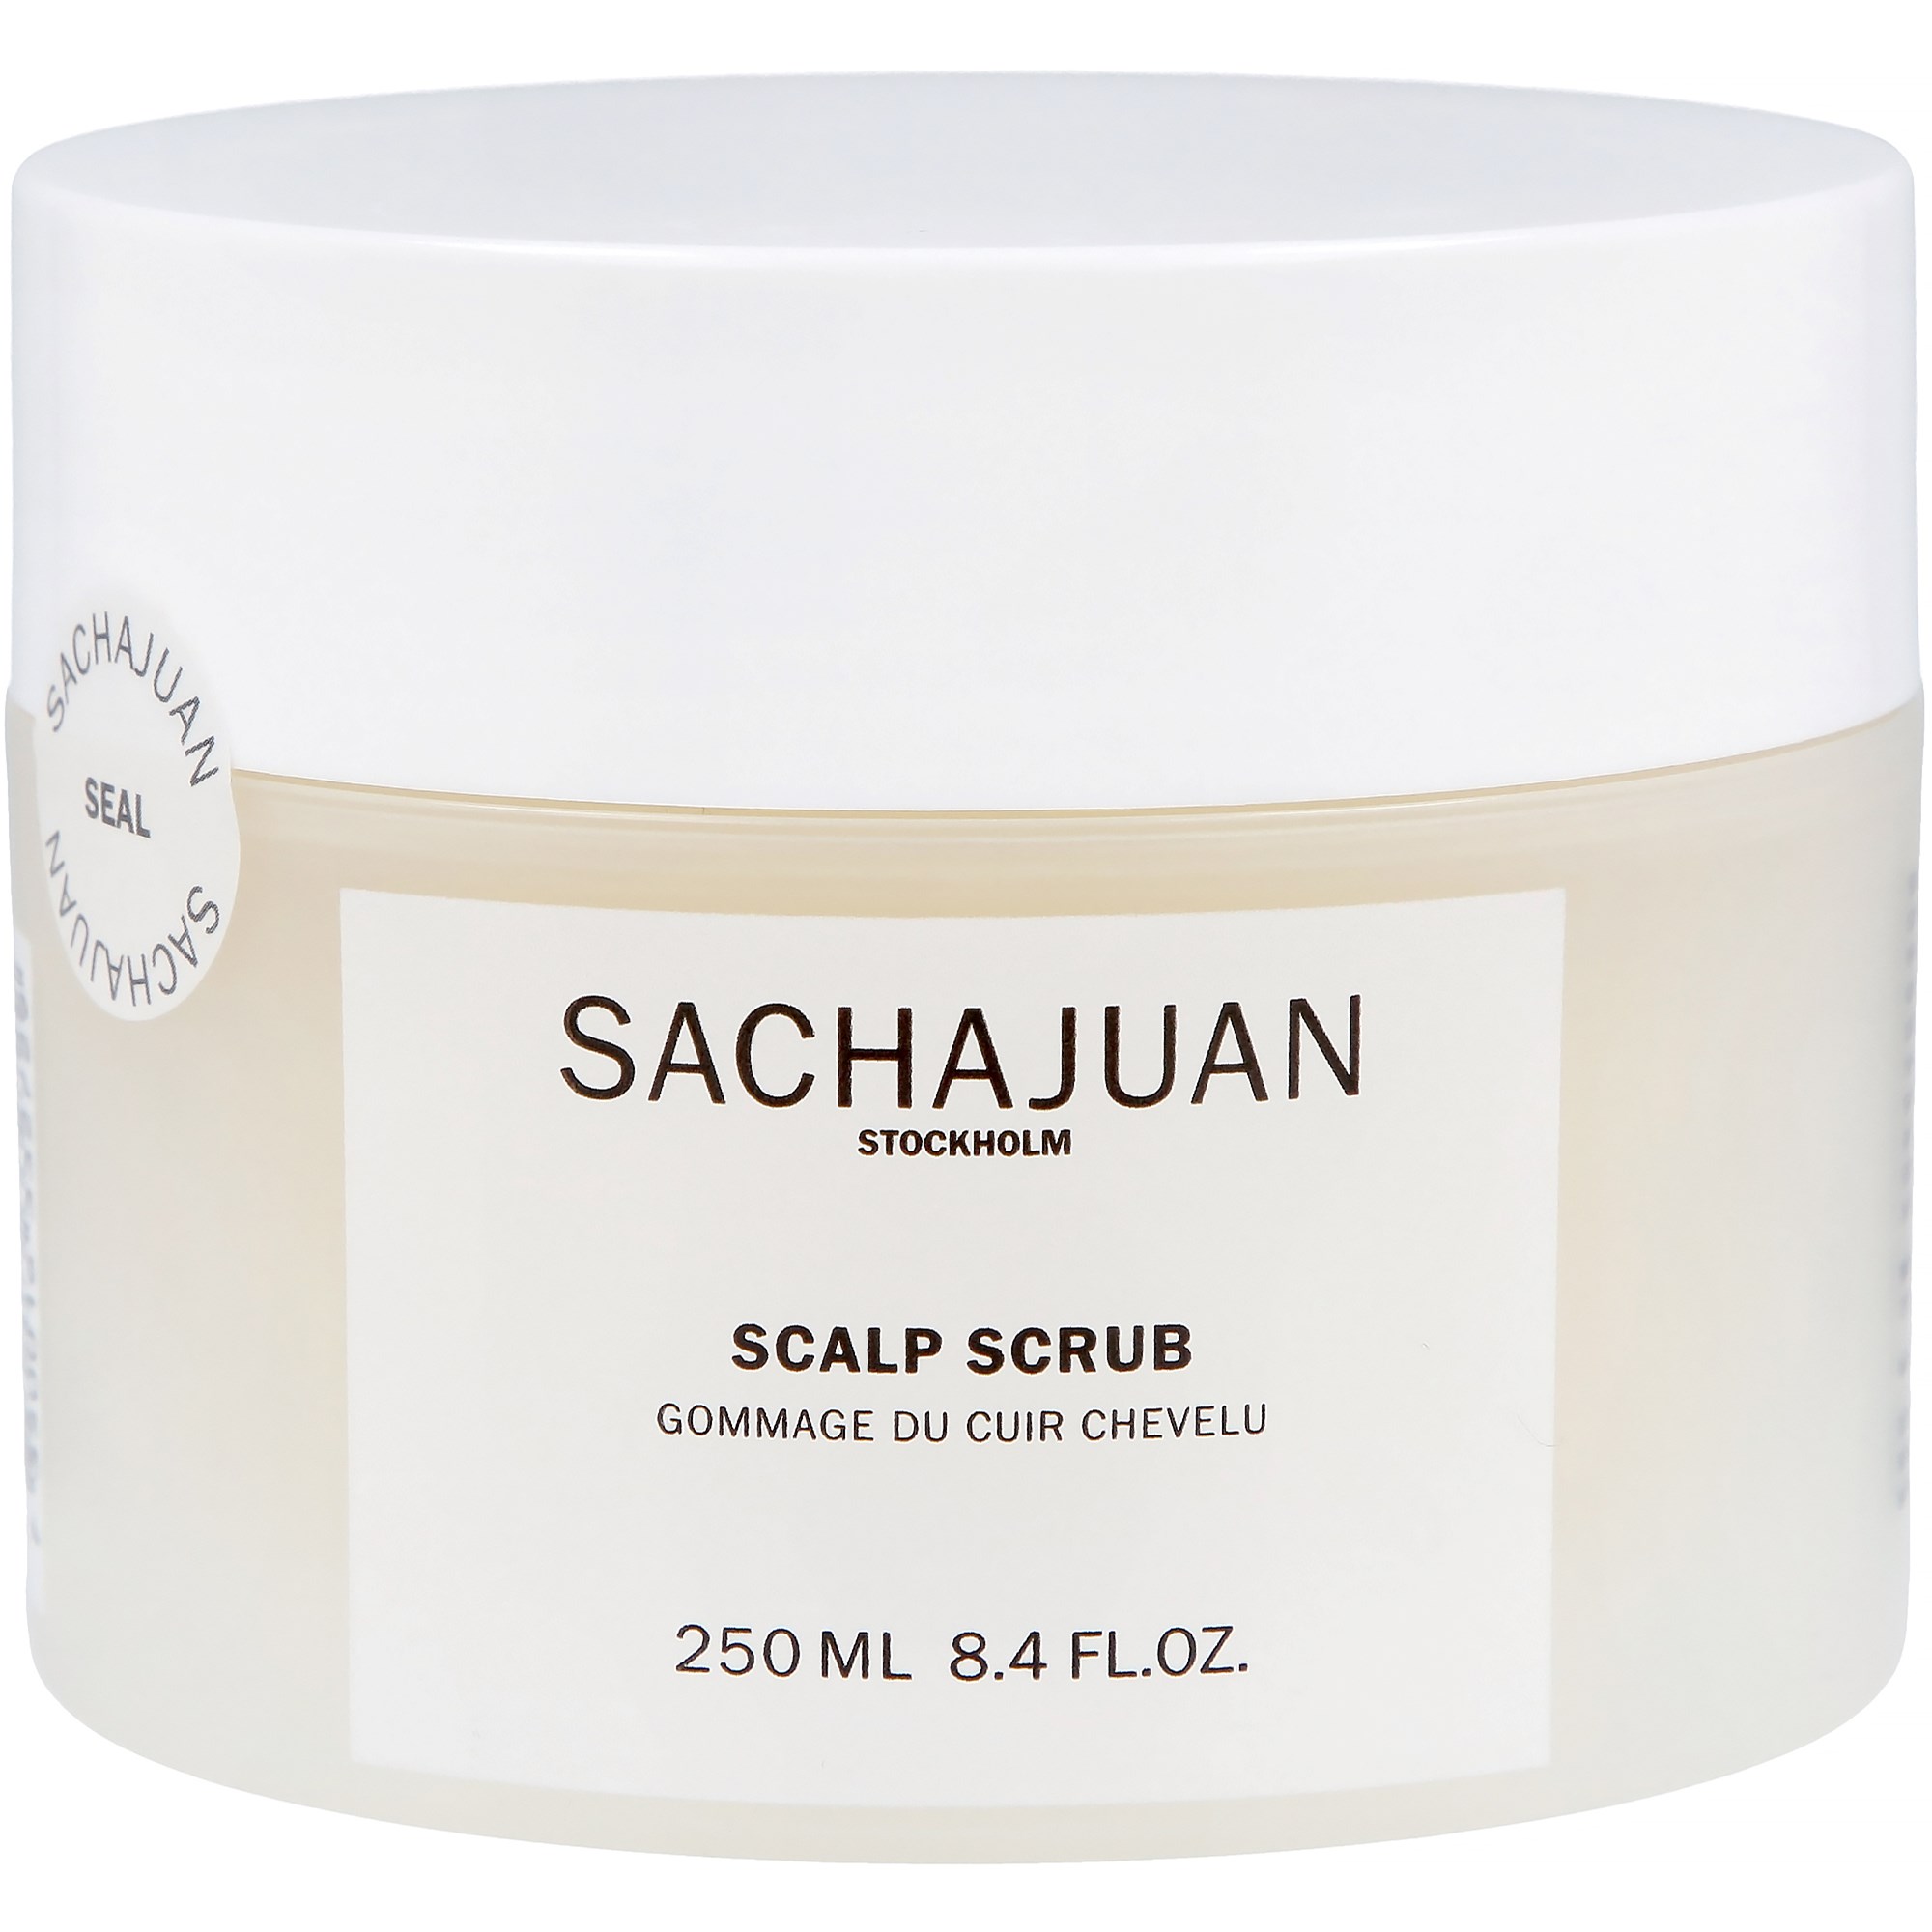 SACHAJUAN Treatment Scalp Scrub 250 ml